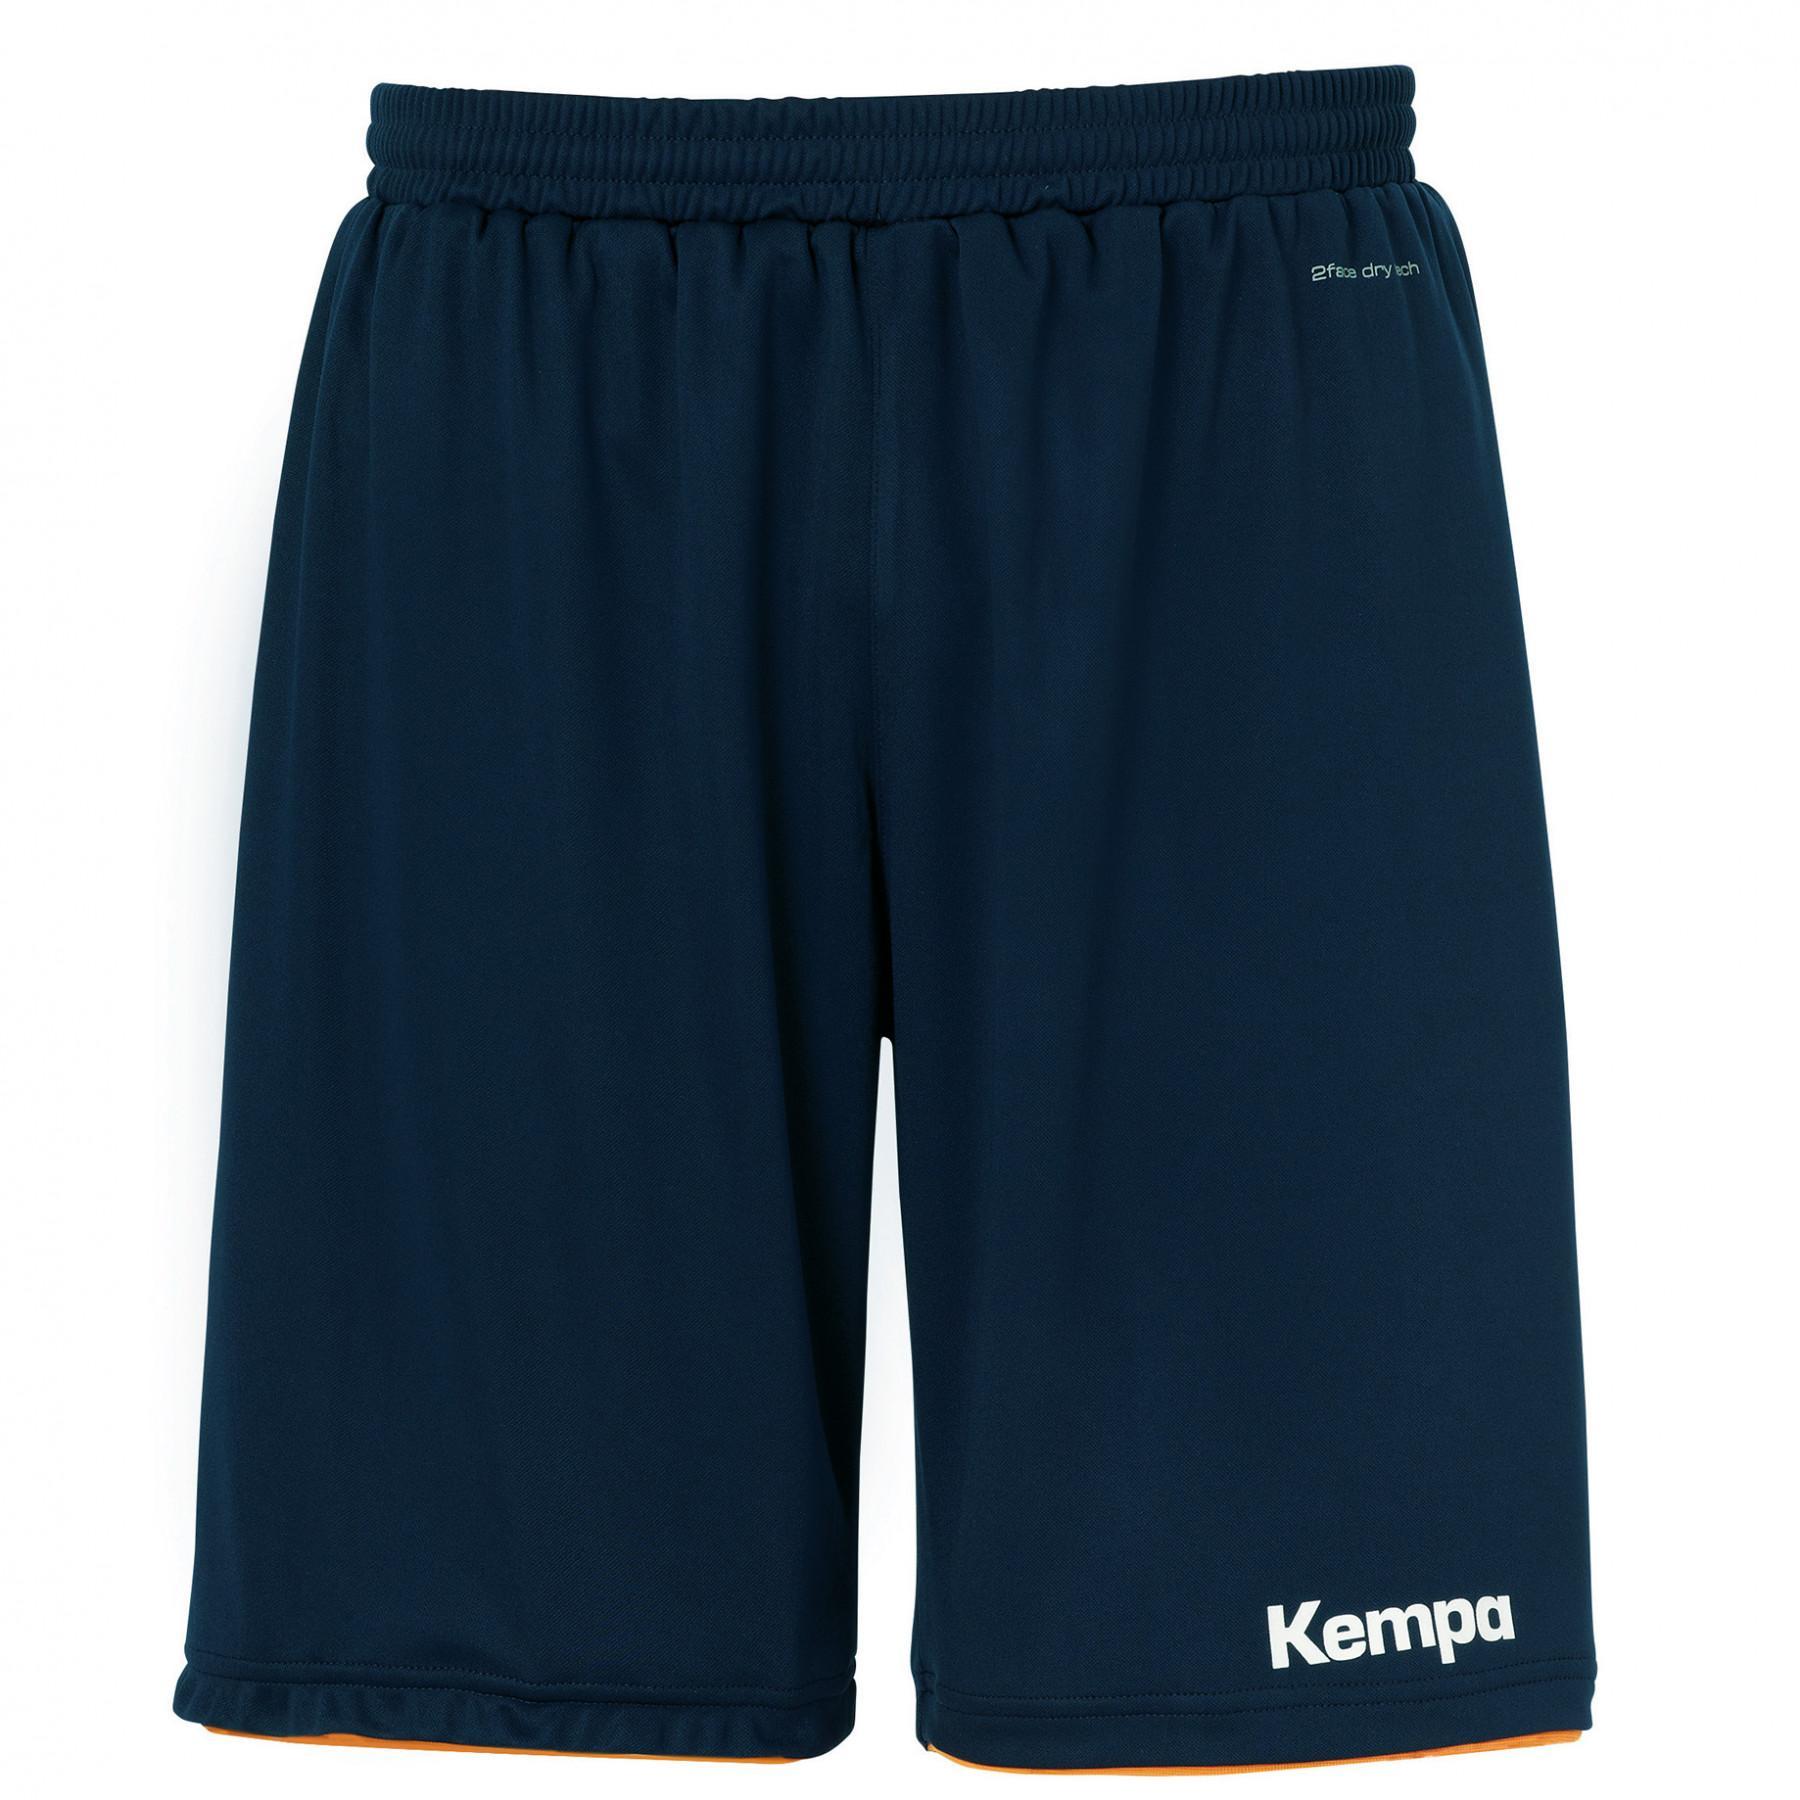 Pantaloncini Kempa Emotion